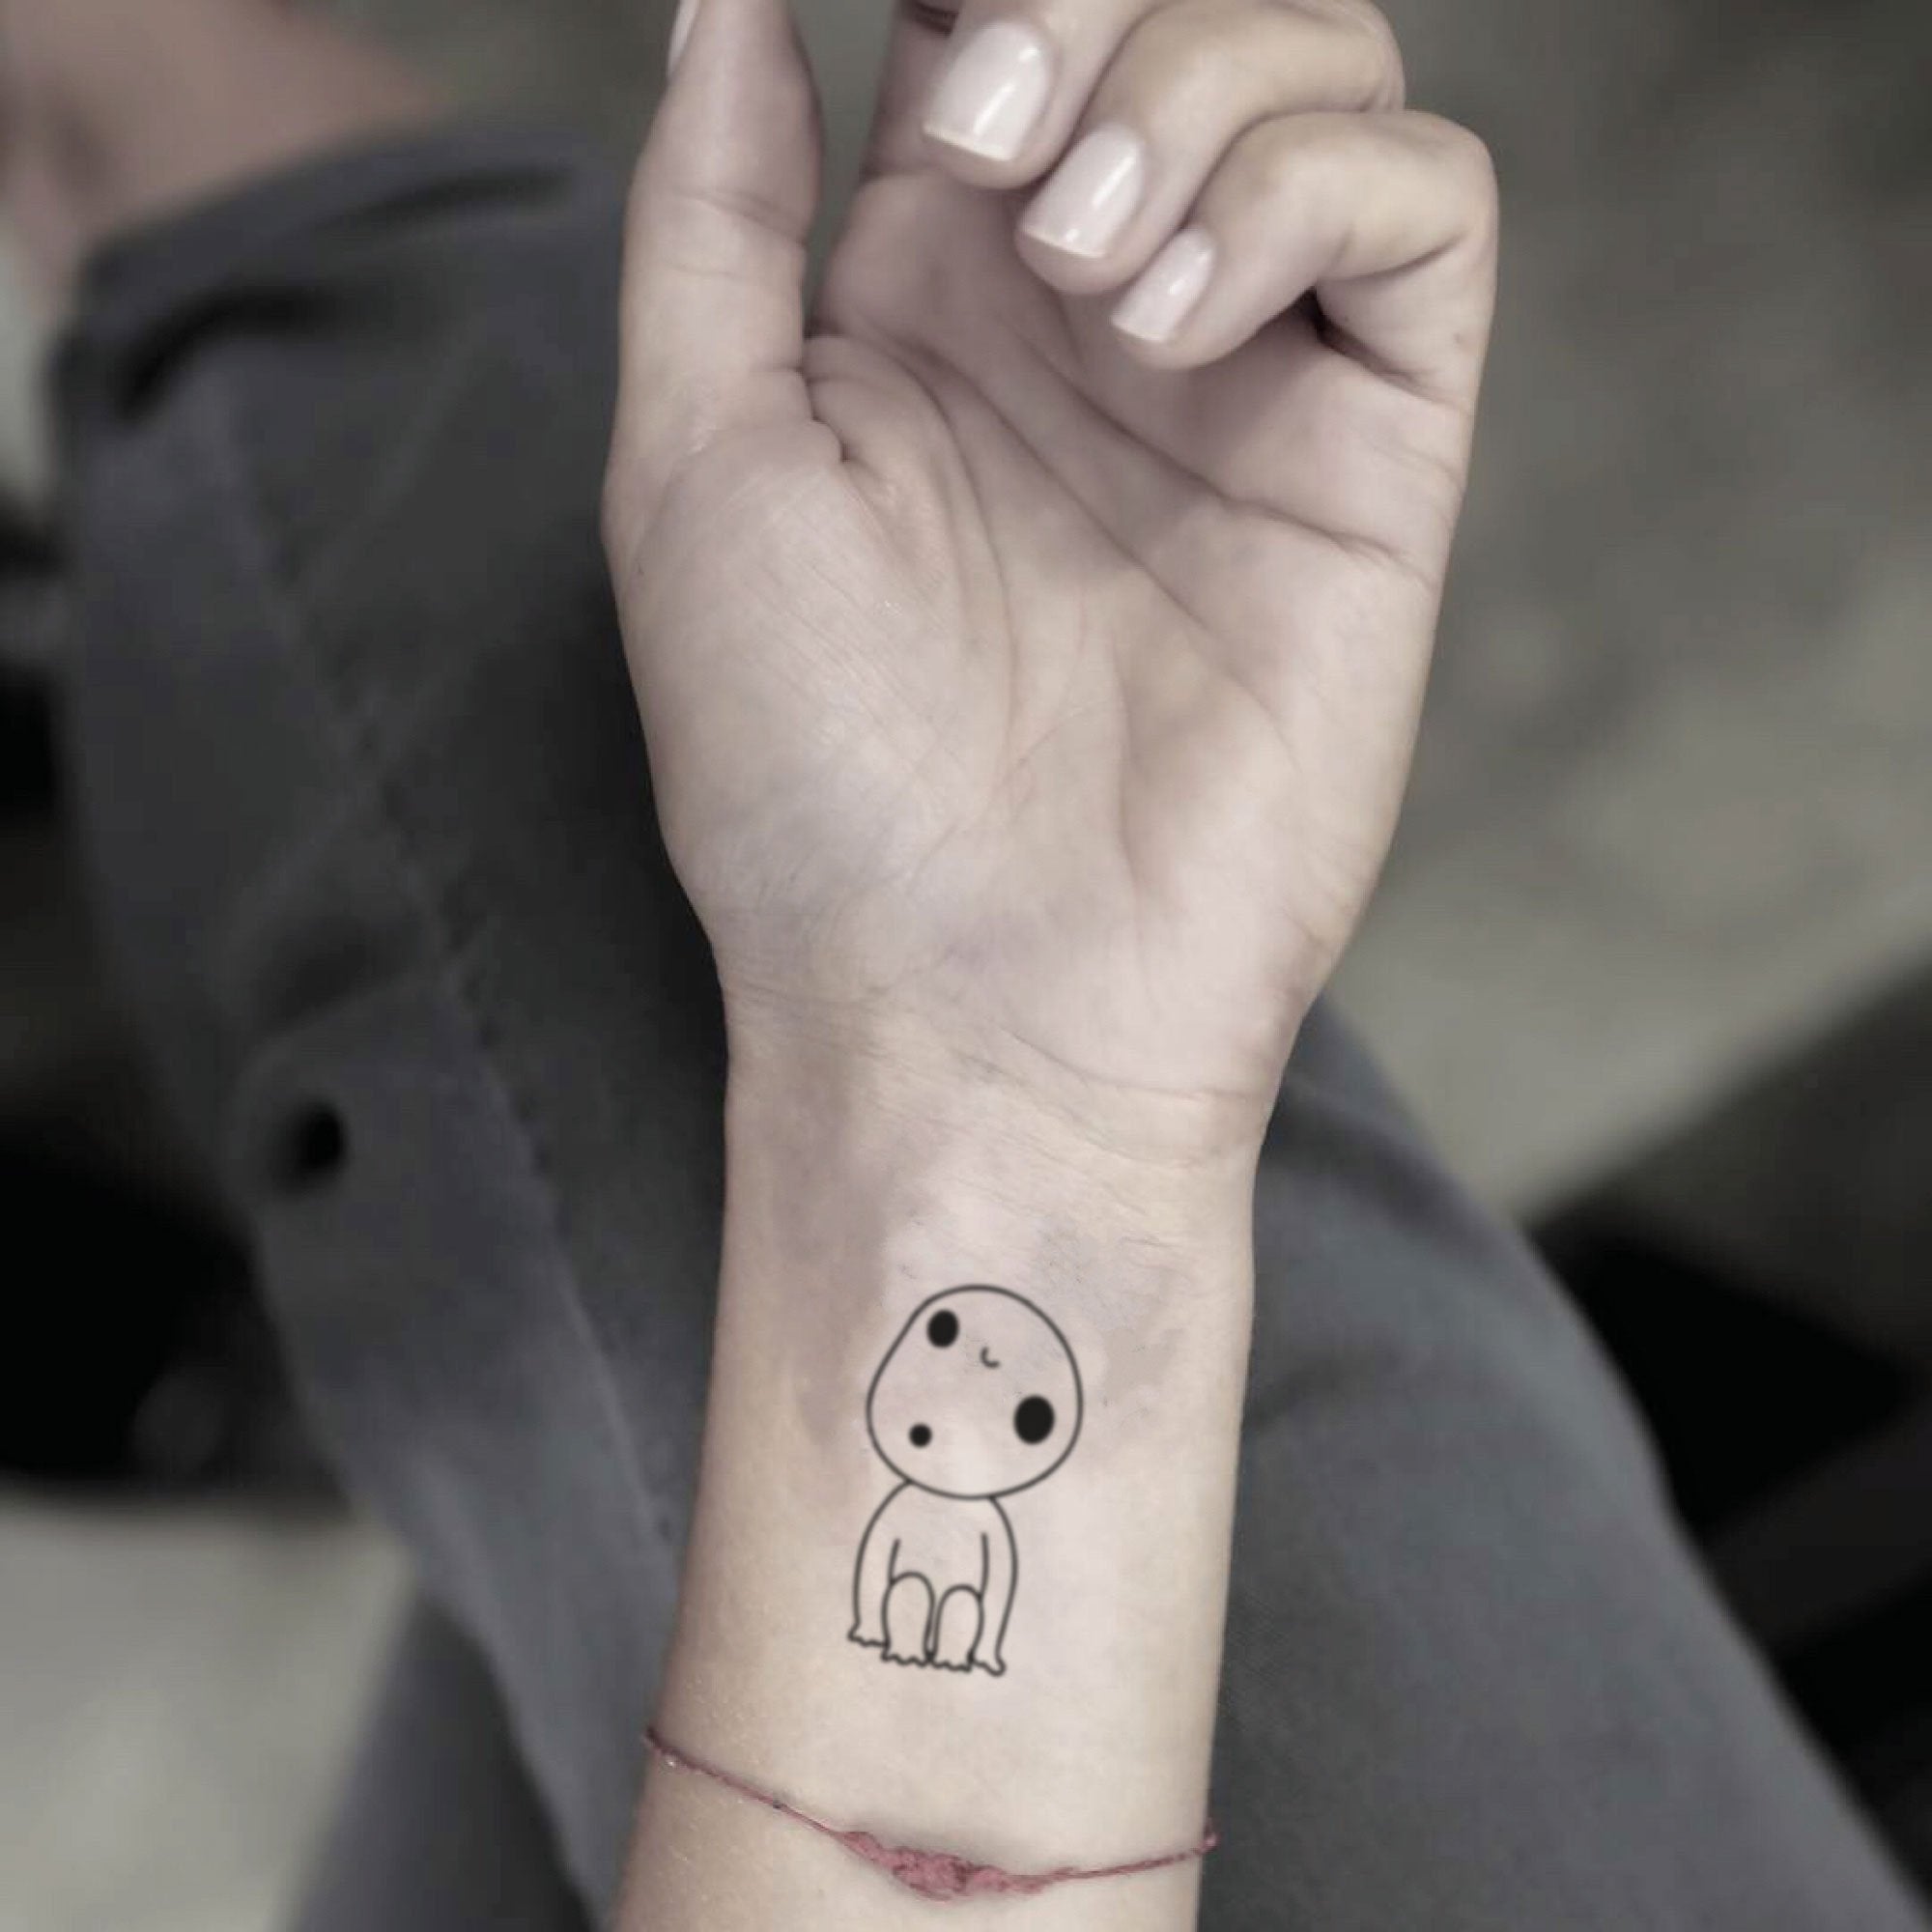 SENATEVALE  KODAMA tat tattoos tattooed ink inked